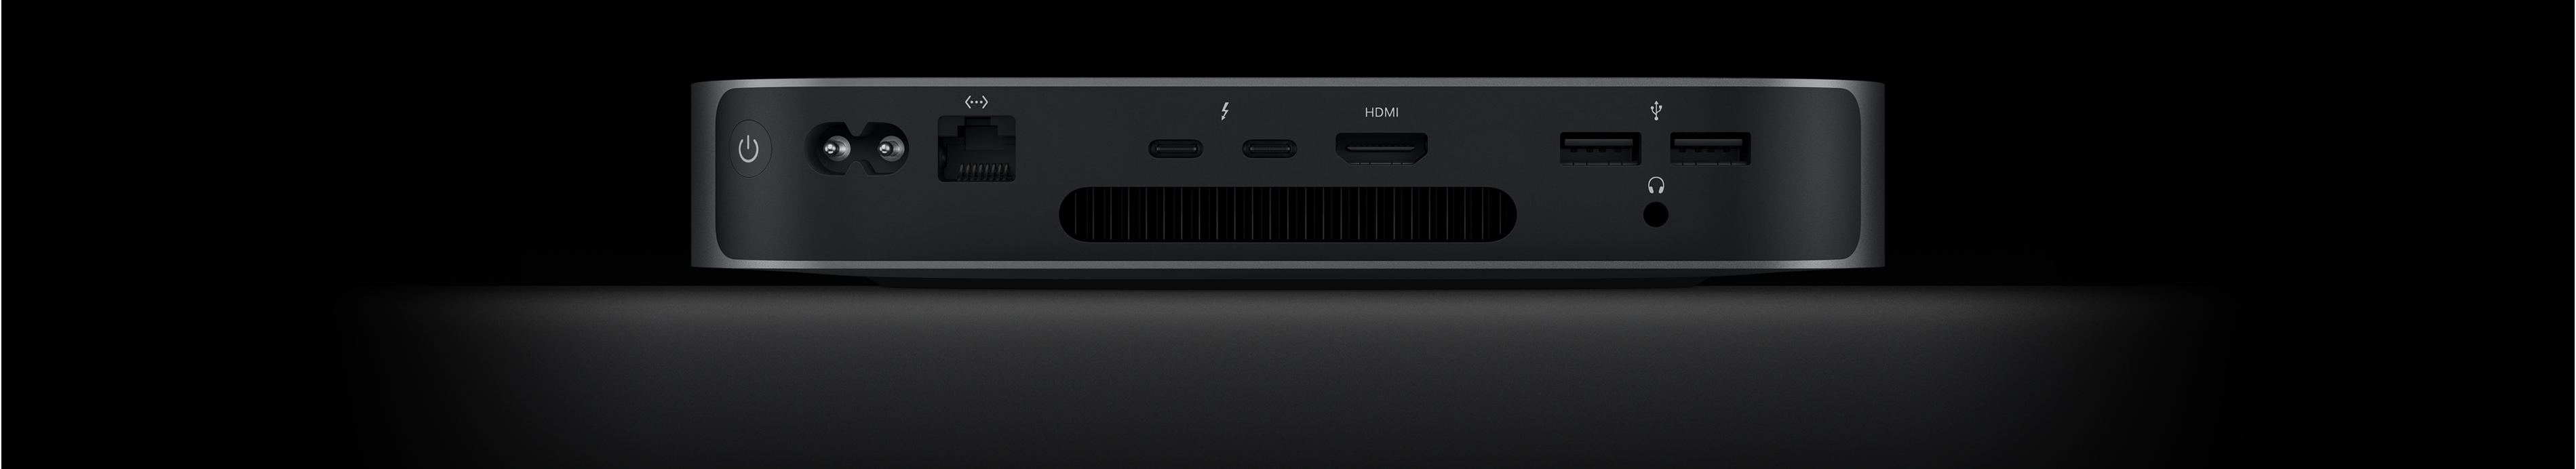 Vista posteriore di Mac mini che mostra due porte Thunderbolt 4, la porta HDMI, due porte USB-A, il jack per cuffie, la porta Gigabit Ethernet, la porta per l’alimentazione e il tasto di accensione.